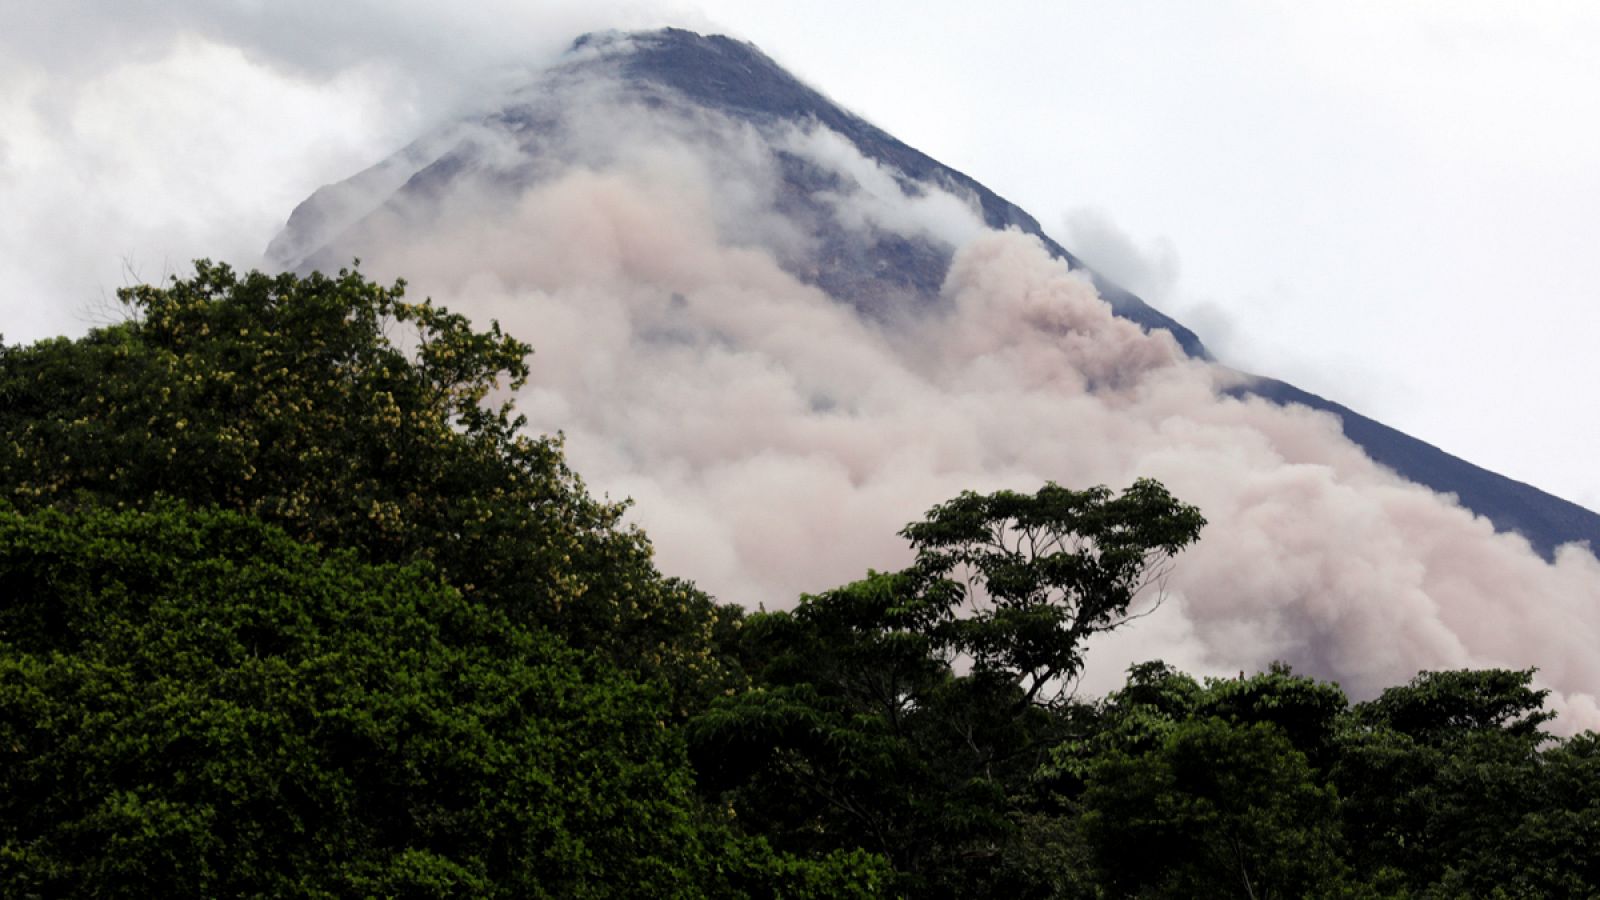 Vista del volcán del Fuego desde Escuintla, Guatemala.